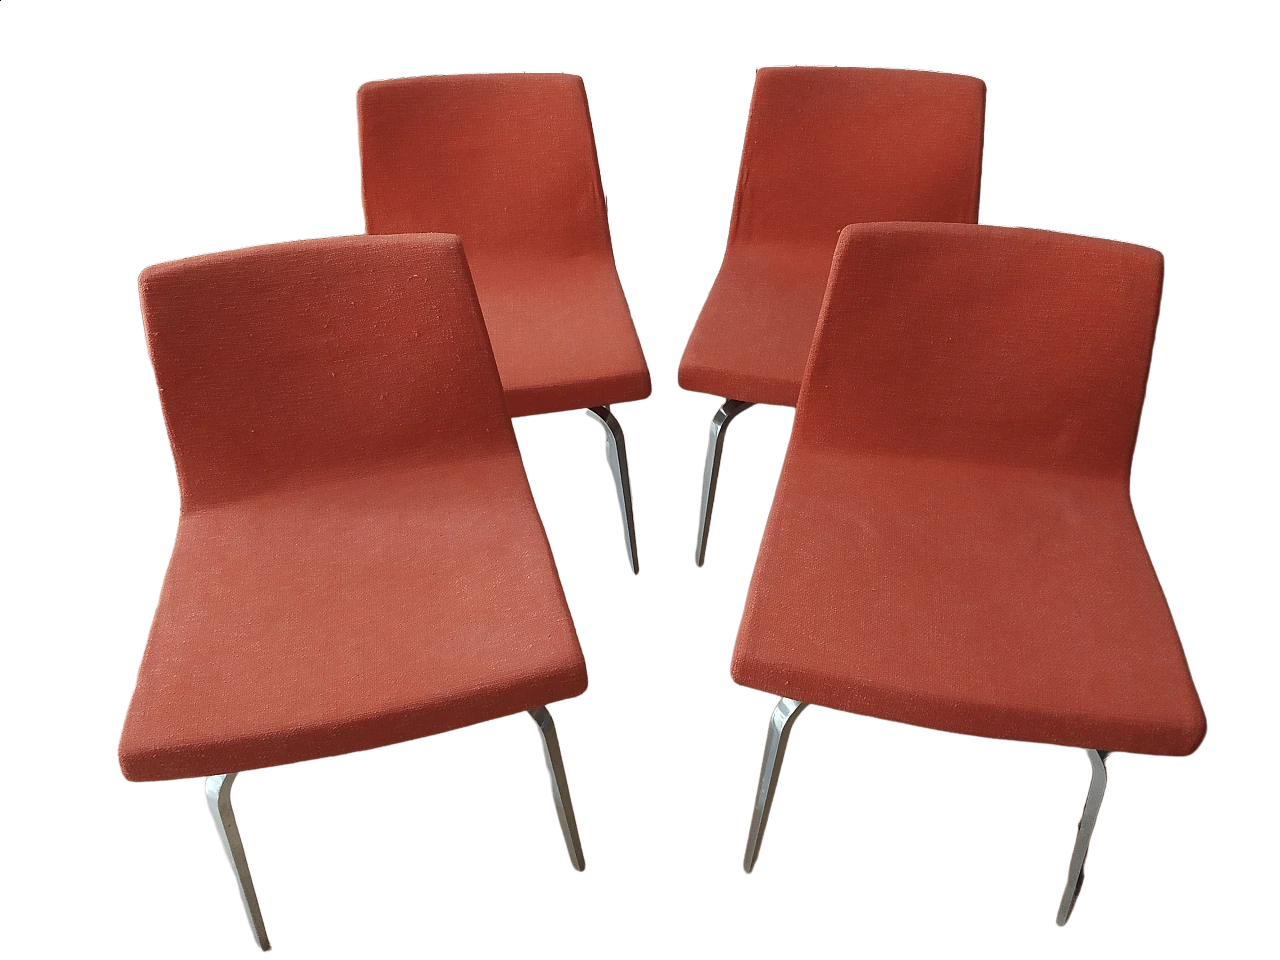 4 Hella Chairs by Mauro Lipparini for MisuraEmme 1477302